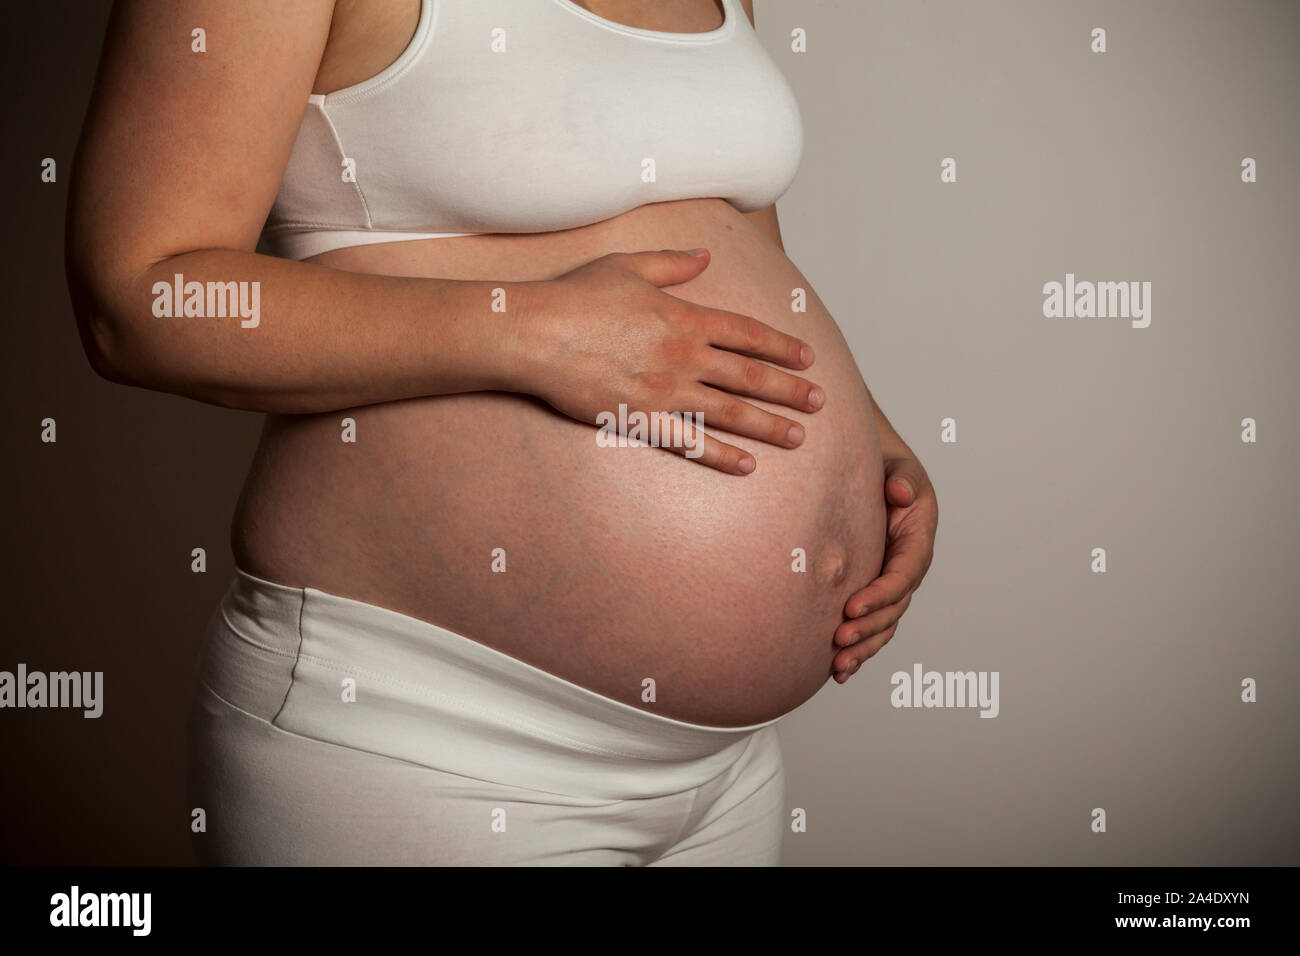 El vientre de una mujer embarazada Foto de stock